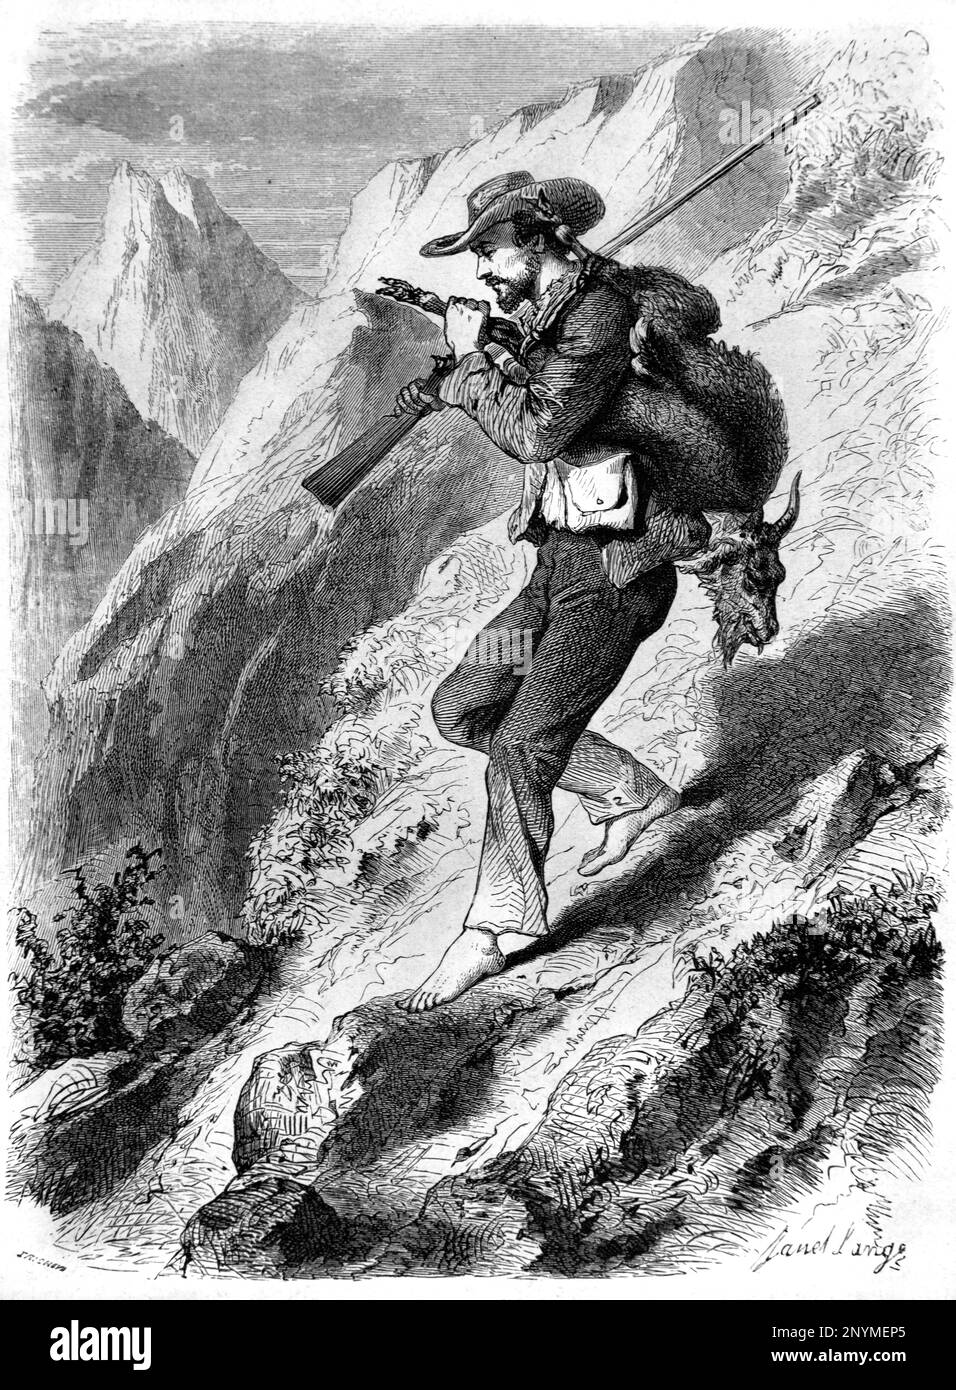 Chasse sauvage de Goat Hunter dans l'intérieur montagneux de l'île de la Réunion. Gravure ancienne ou illustration 1862 Banque D'Images